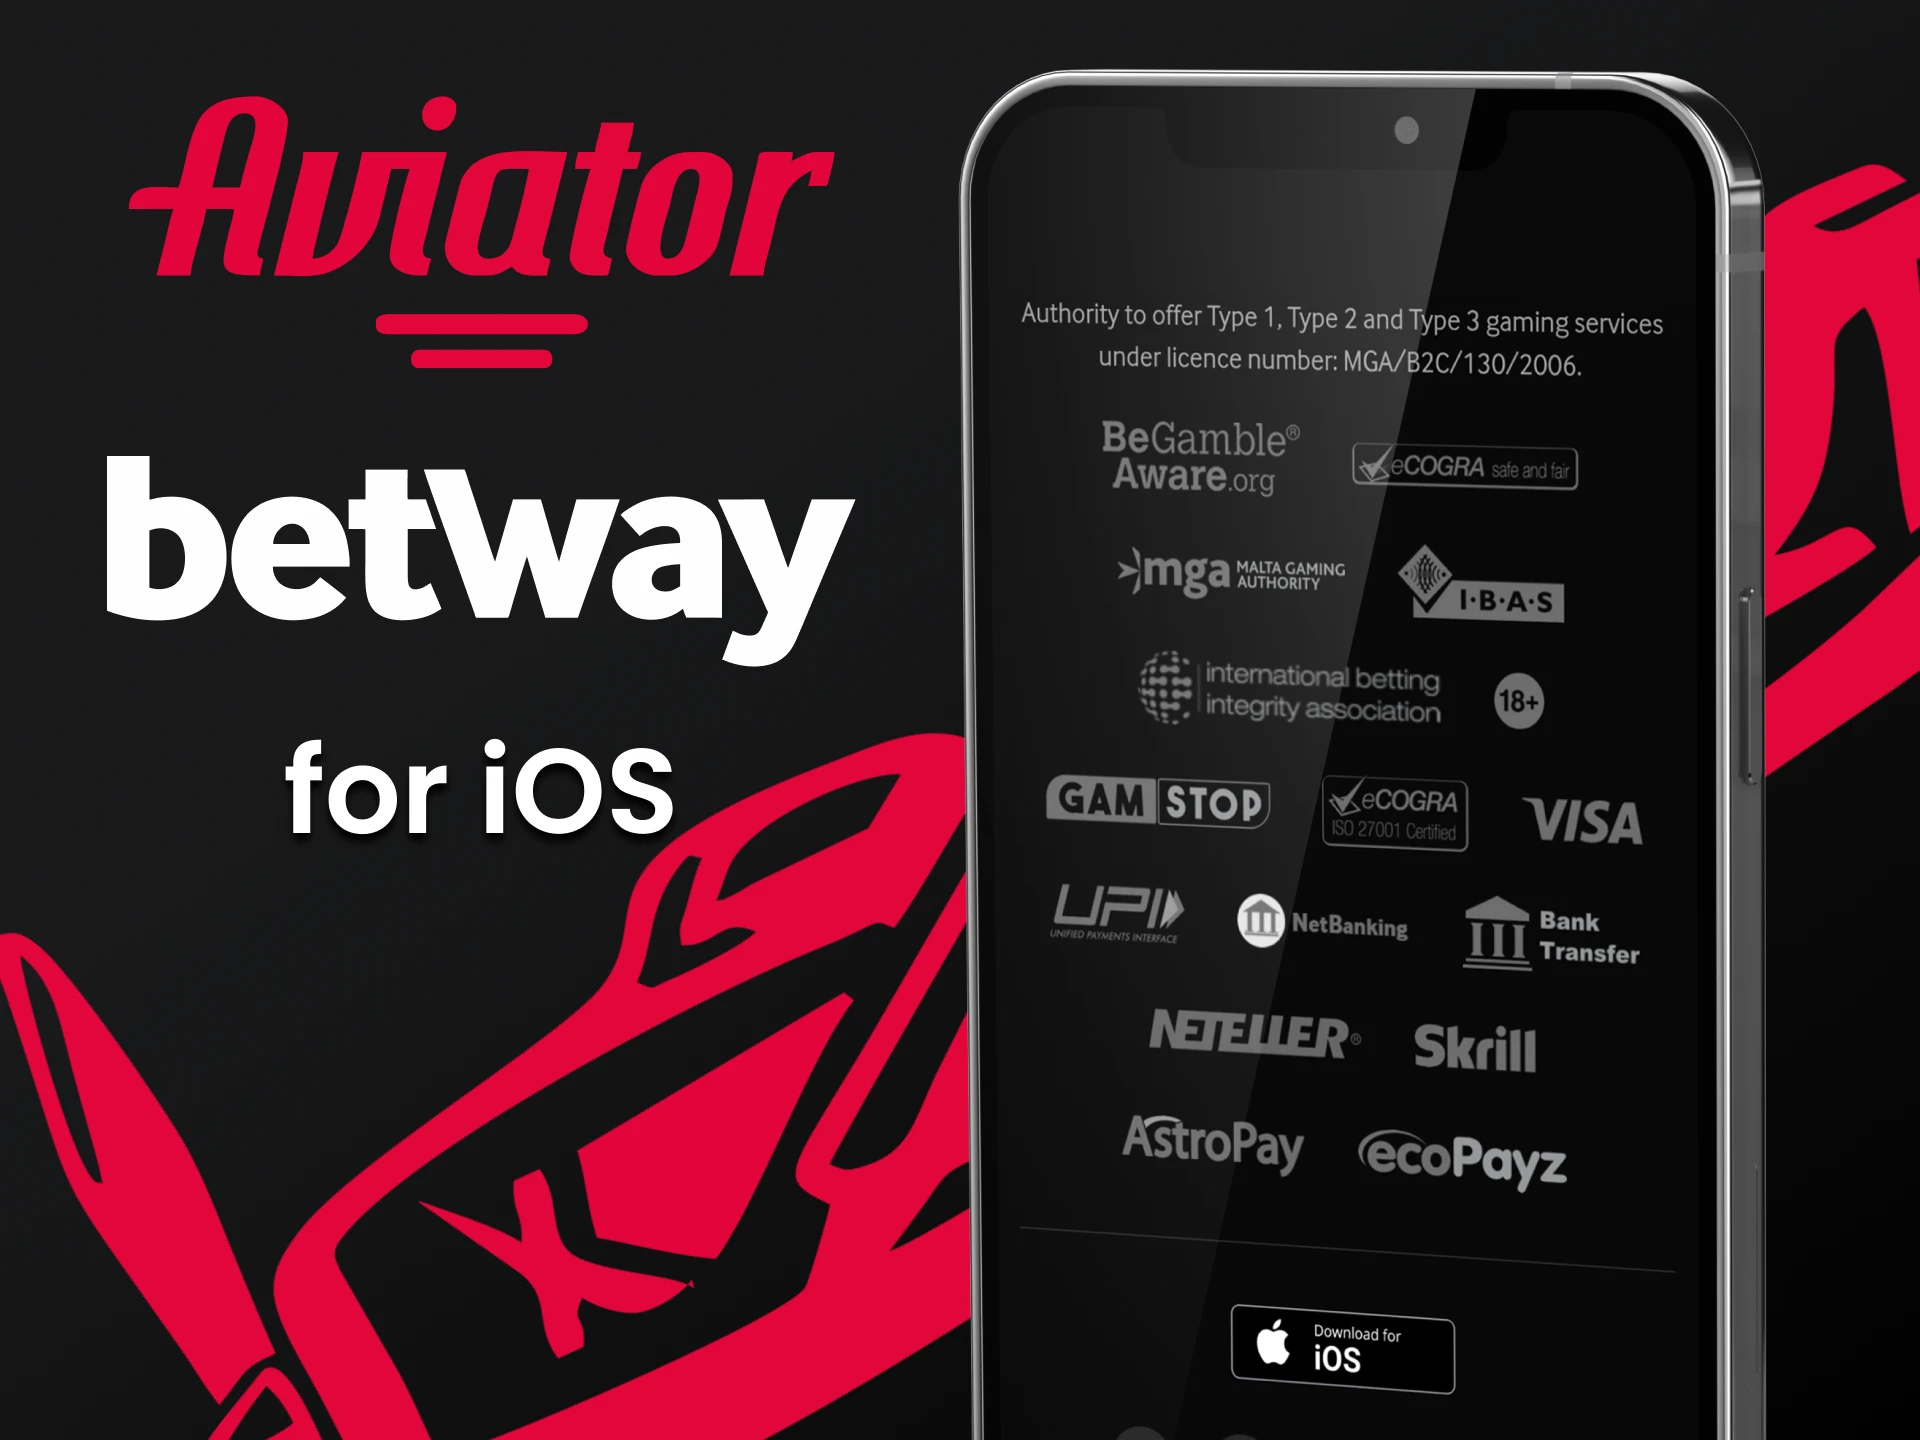 Jogar Aviator através da aplicação Betway iOS.